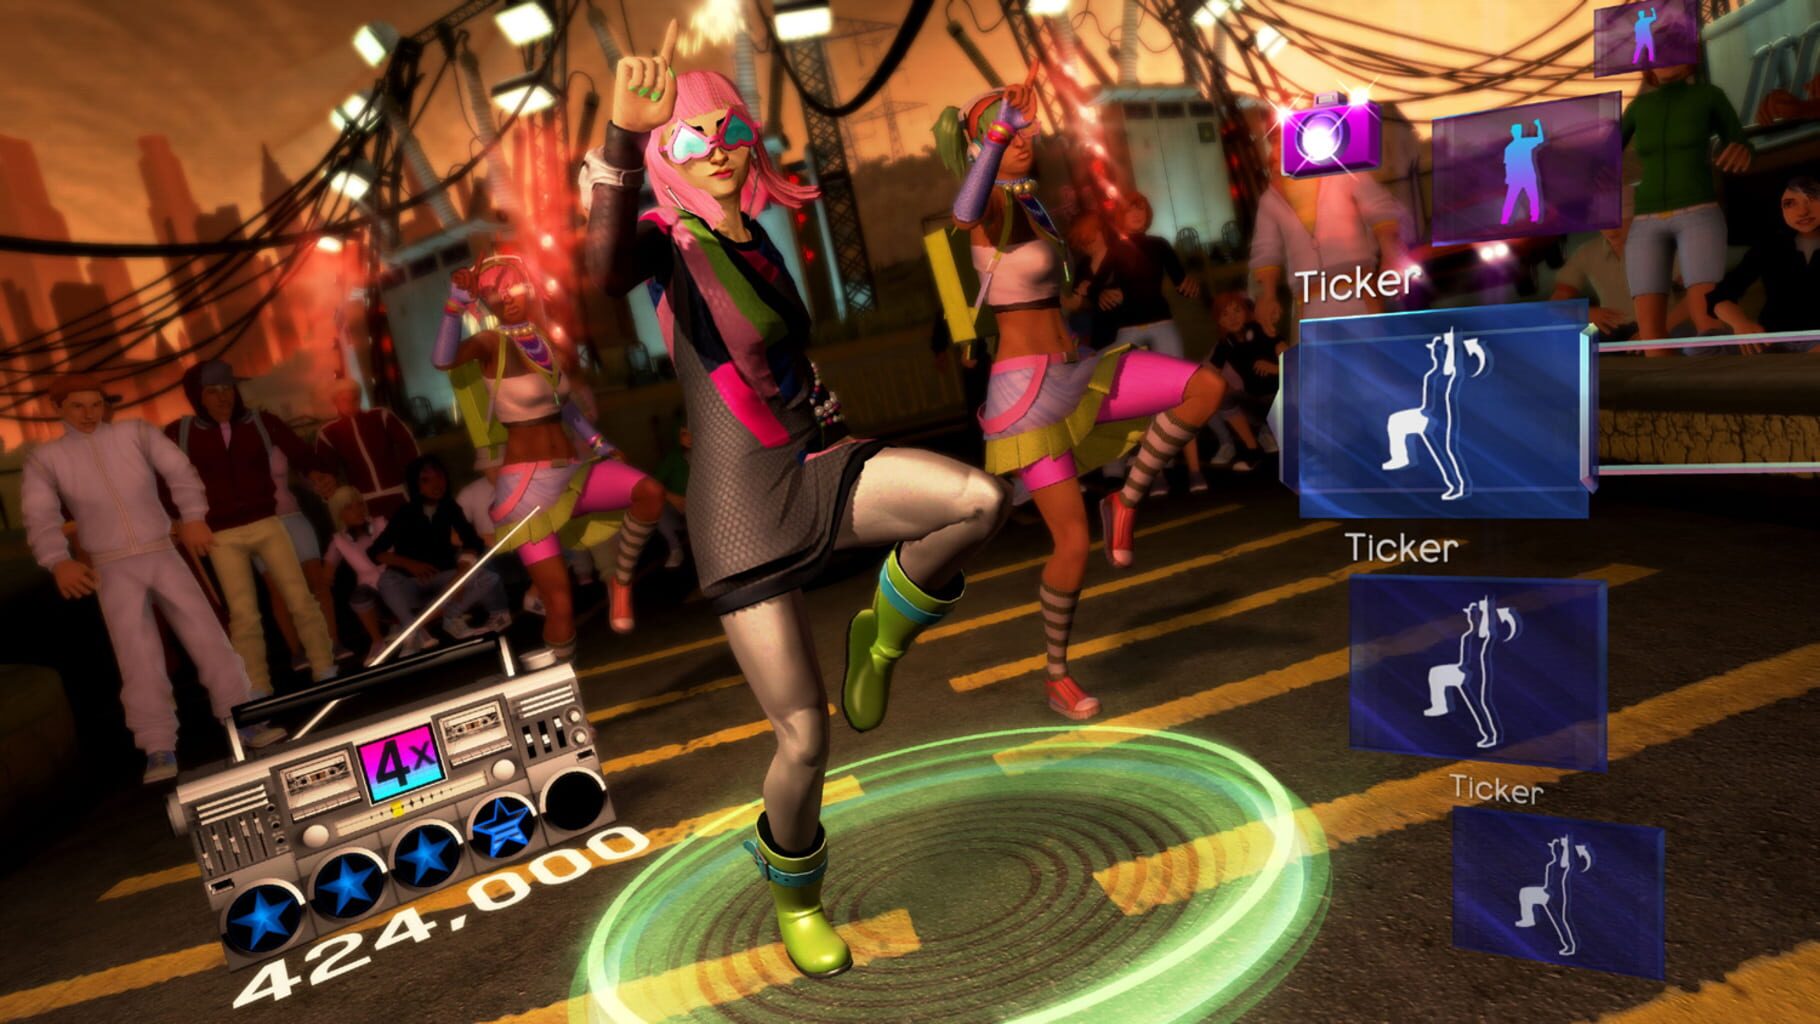 Топ совместных игр. Xbox 360 Kinect Dance Central. Dance Central 2 (Xbox 360 Kinect) lt+3.0. Dance Central 2 Xbox 360. Dance Central 1 (Xbox 360 Kinect) lt+3.0.